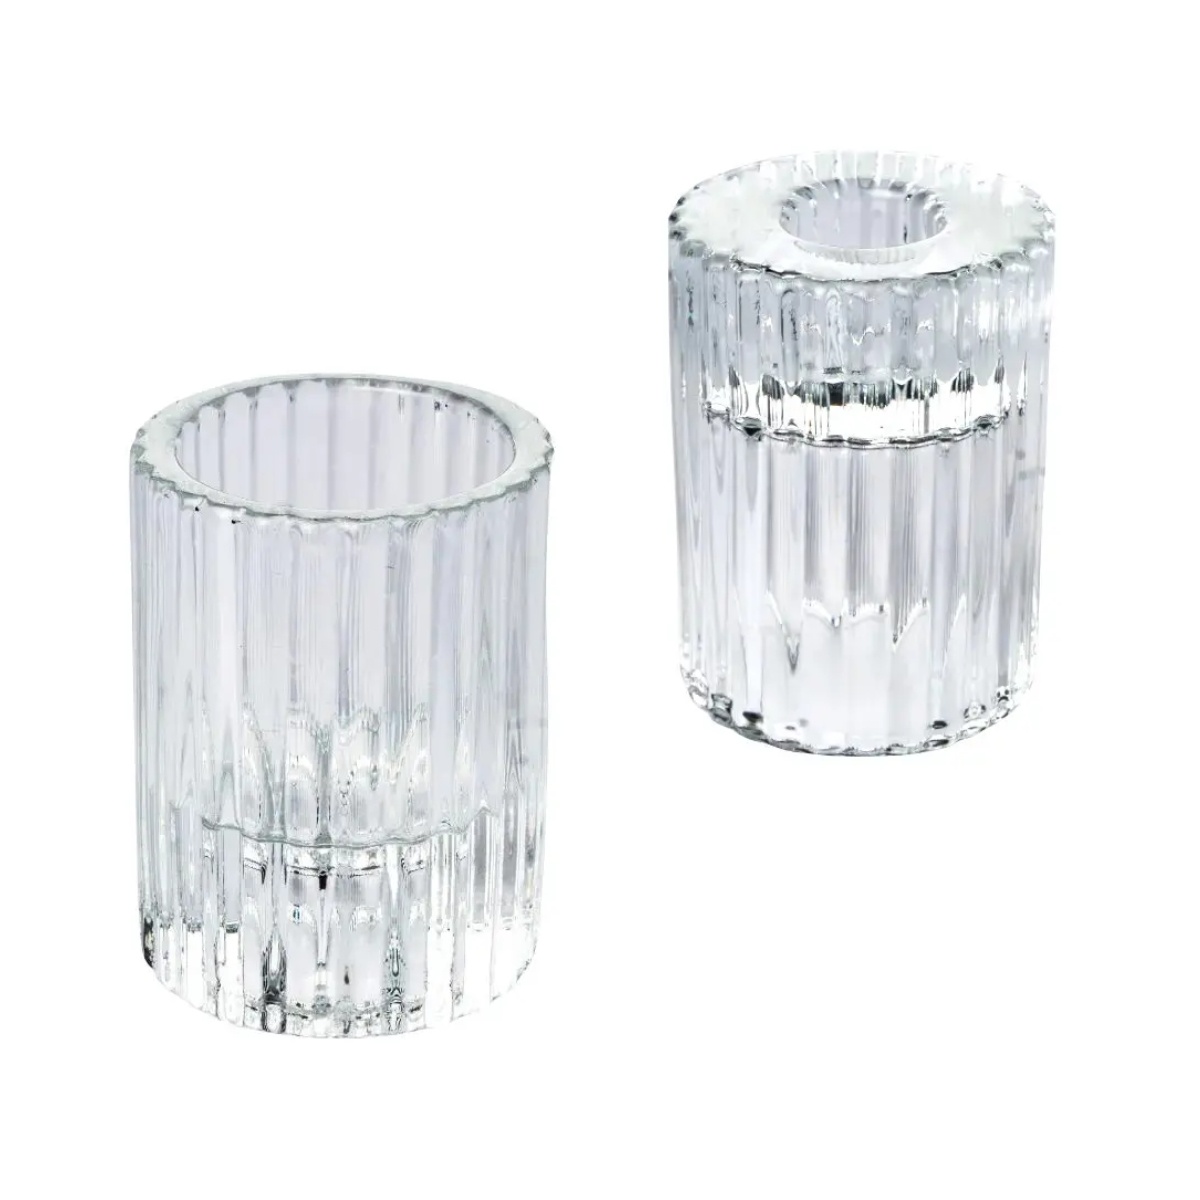 Kombi Teelichthalter Kerzenständer SHINE STRIPES Glas 77mm | Kerzenständer